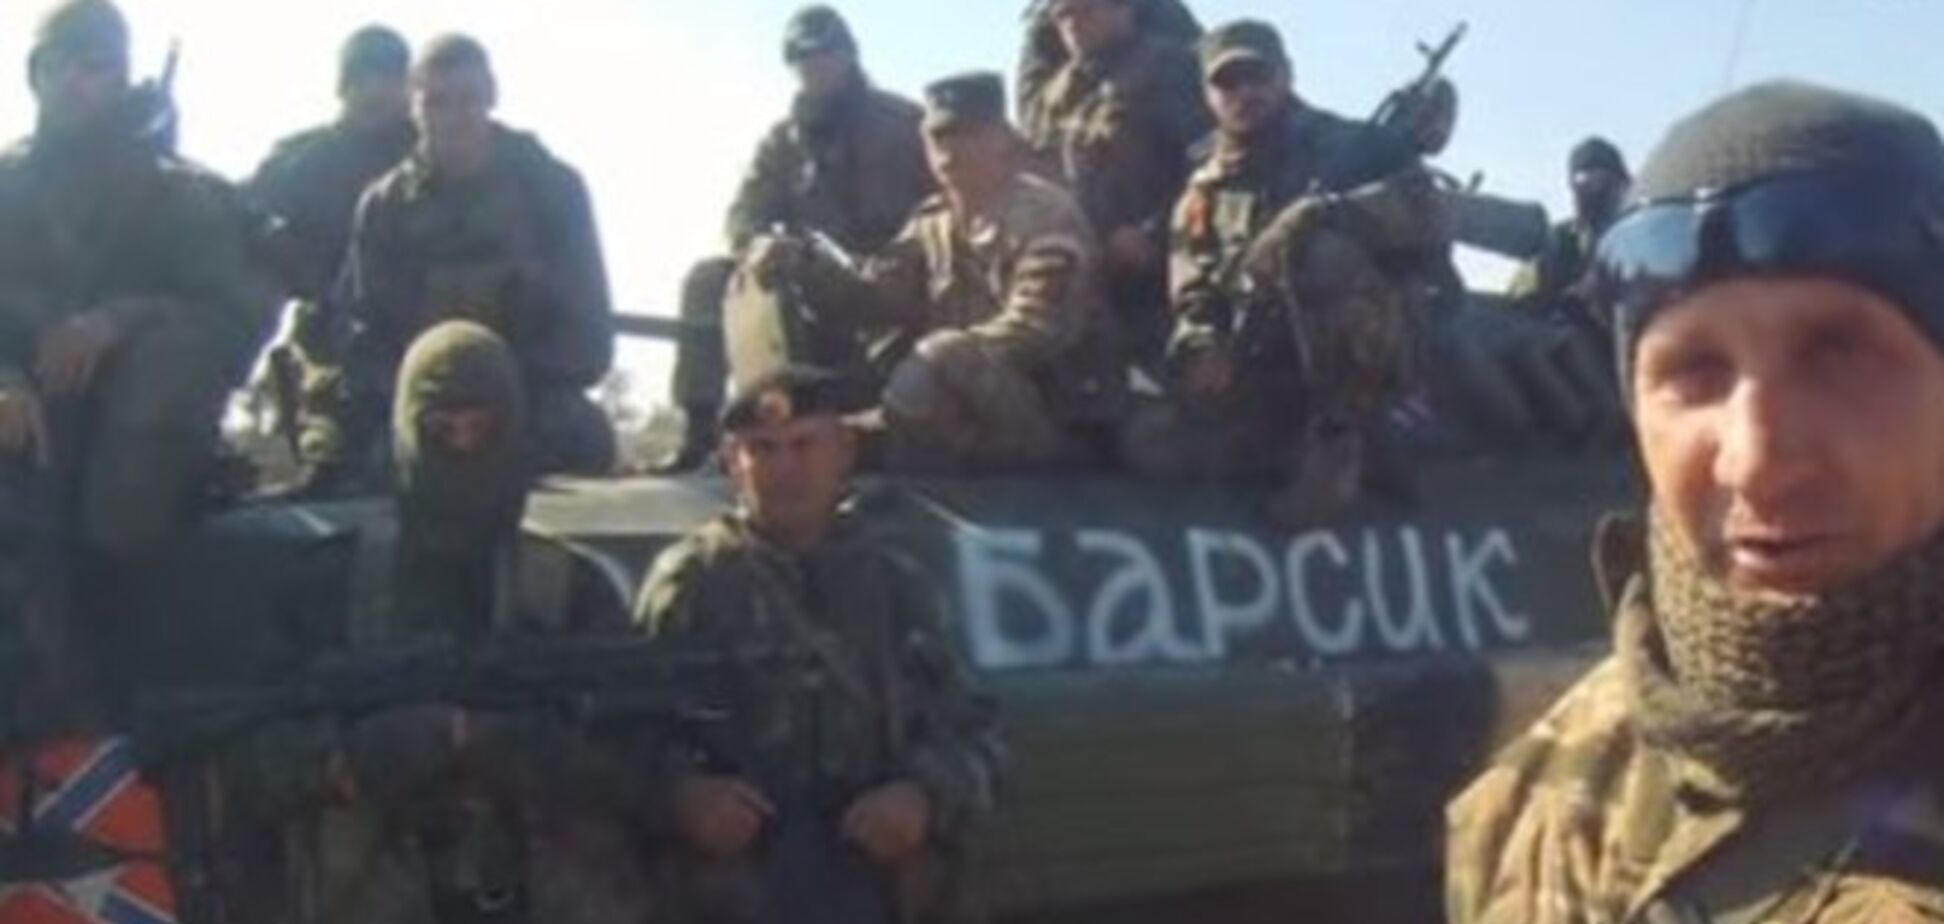 Российские оккупанты Новоазовска открыли лица на видео и анонсировали поход на Львов